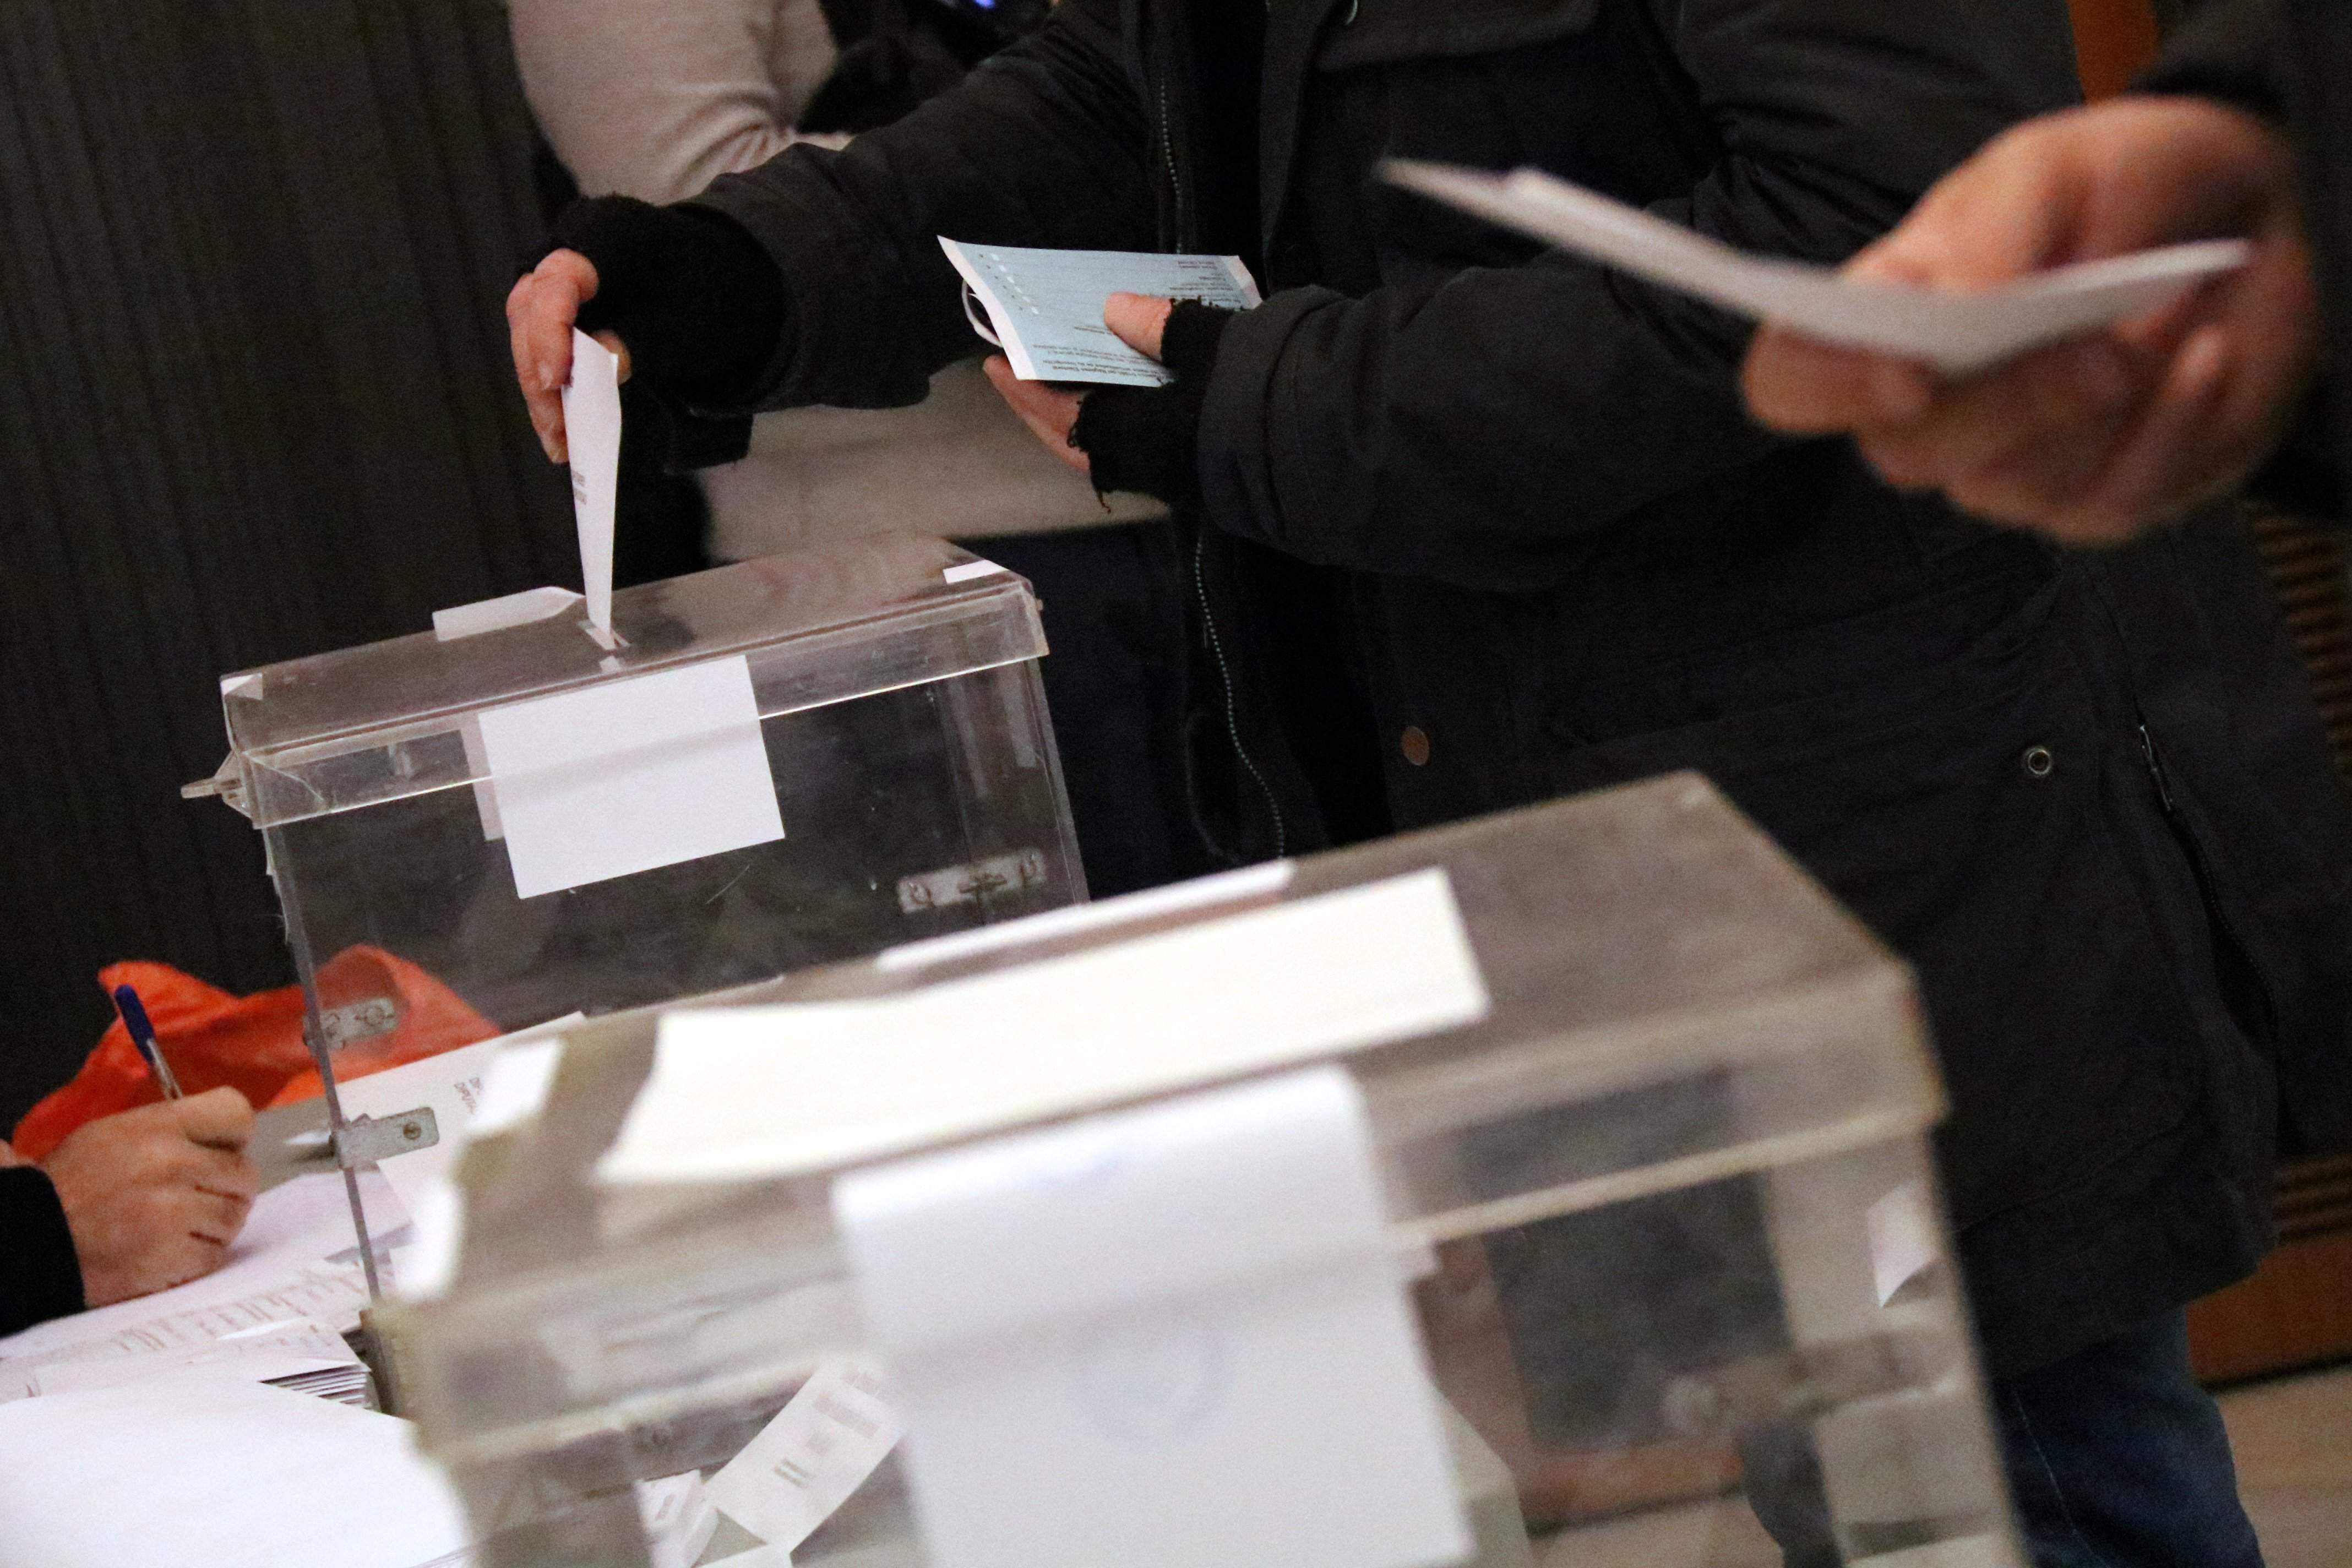 Una nova app ofereix en directe el recompte de vots dels col·legis electorals durant les eleccions